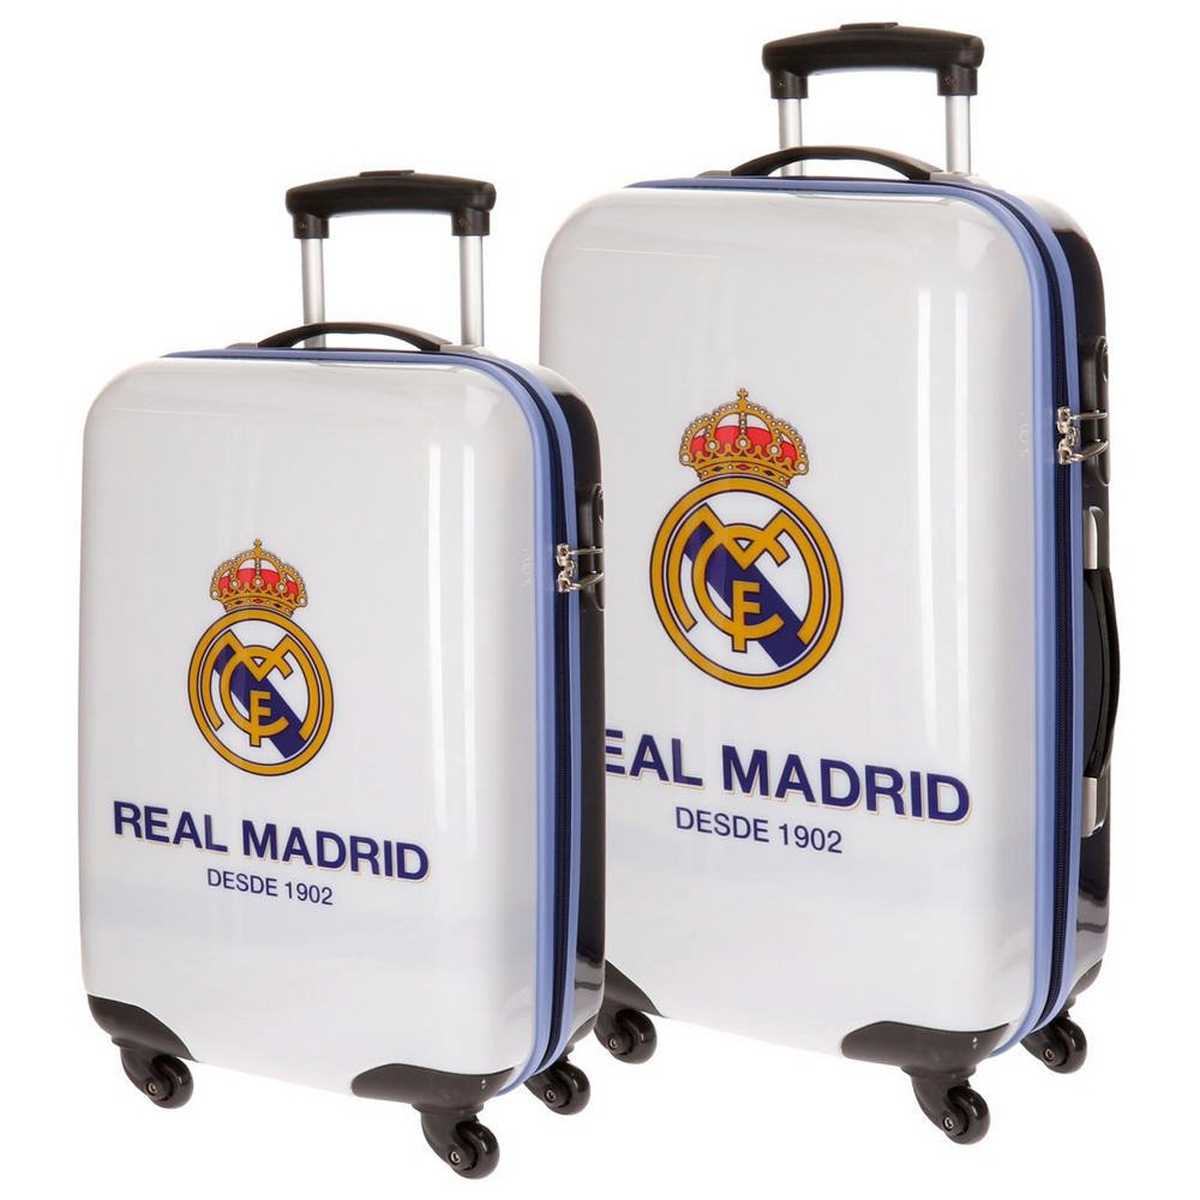 Maleta de cabina del Real Madrid: el complemento ideal para los verdaderos seguidores del equipo